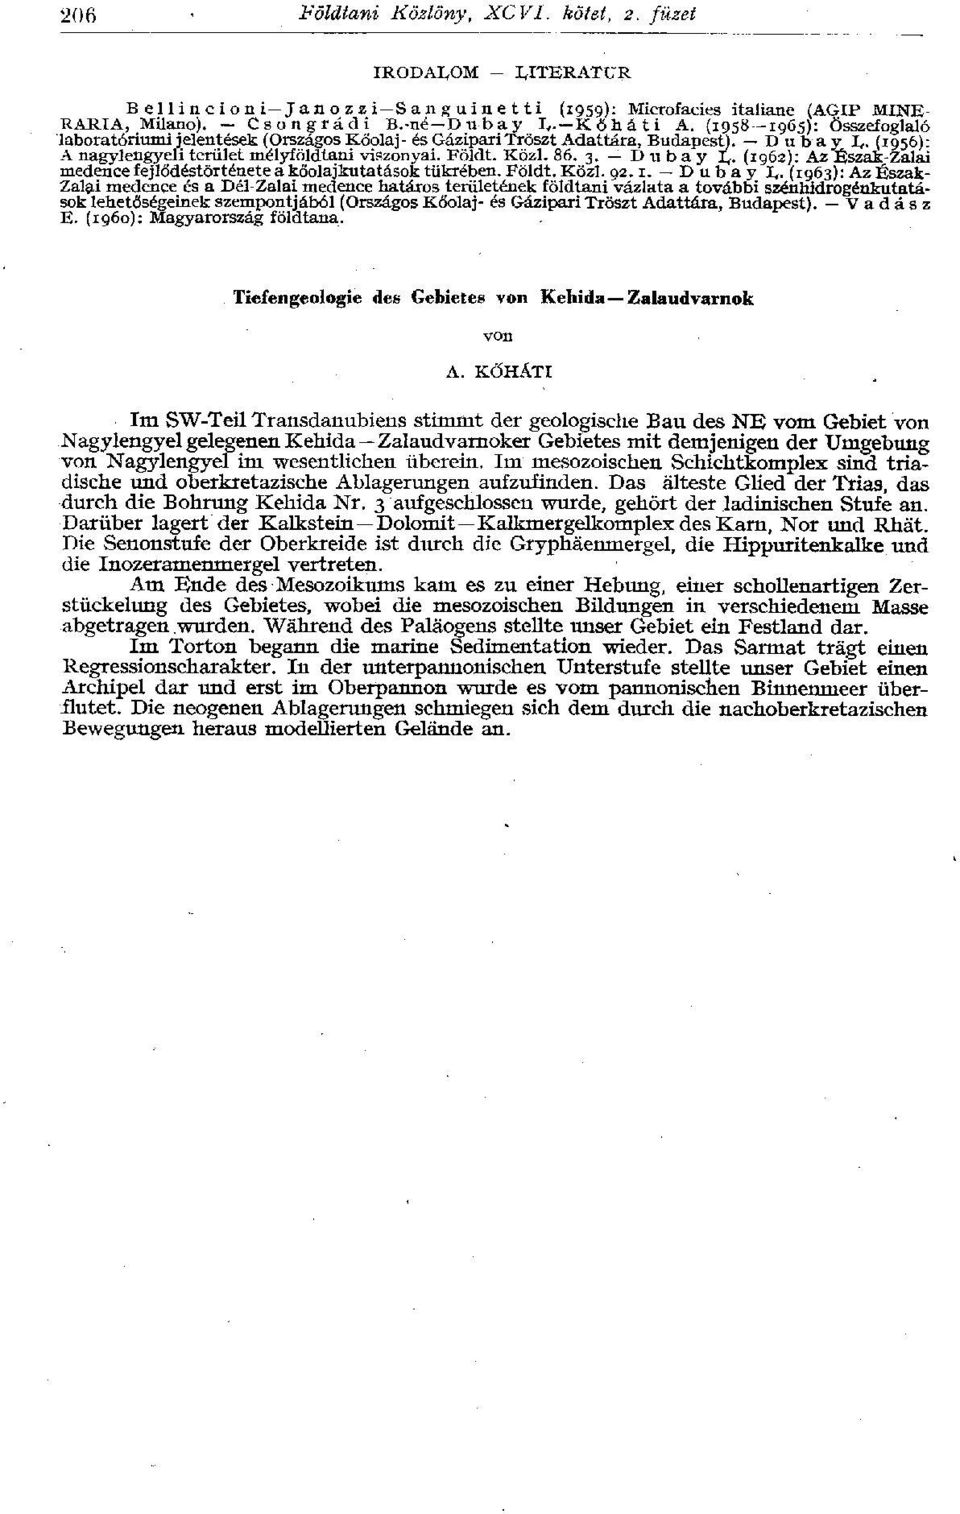 D u b a y L- (1962): Az Észak-Zalai medence fejlődéstörténete a kőolajkutatások tükrében. Földt. Közi. 92.1. D u b a y L.